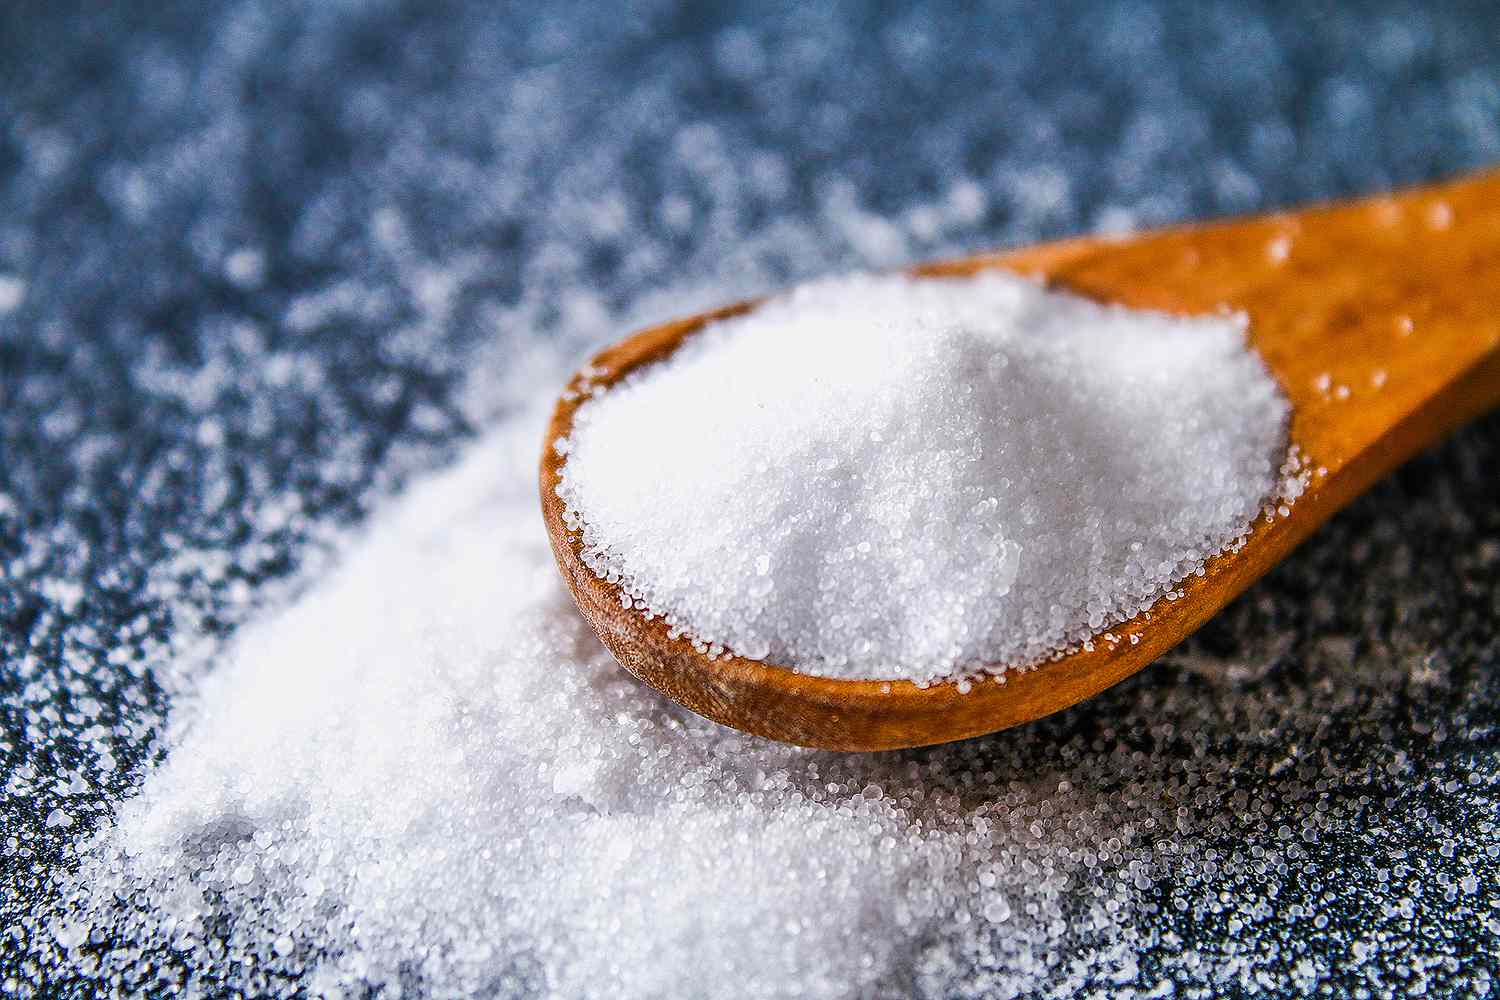 FDA просит рестораны и производителей продуктов питания сократить употребление соли, чтобы спасти жизни американцев